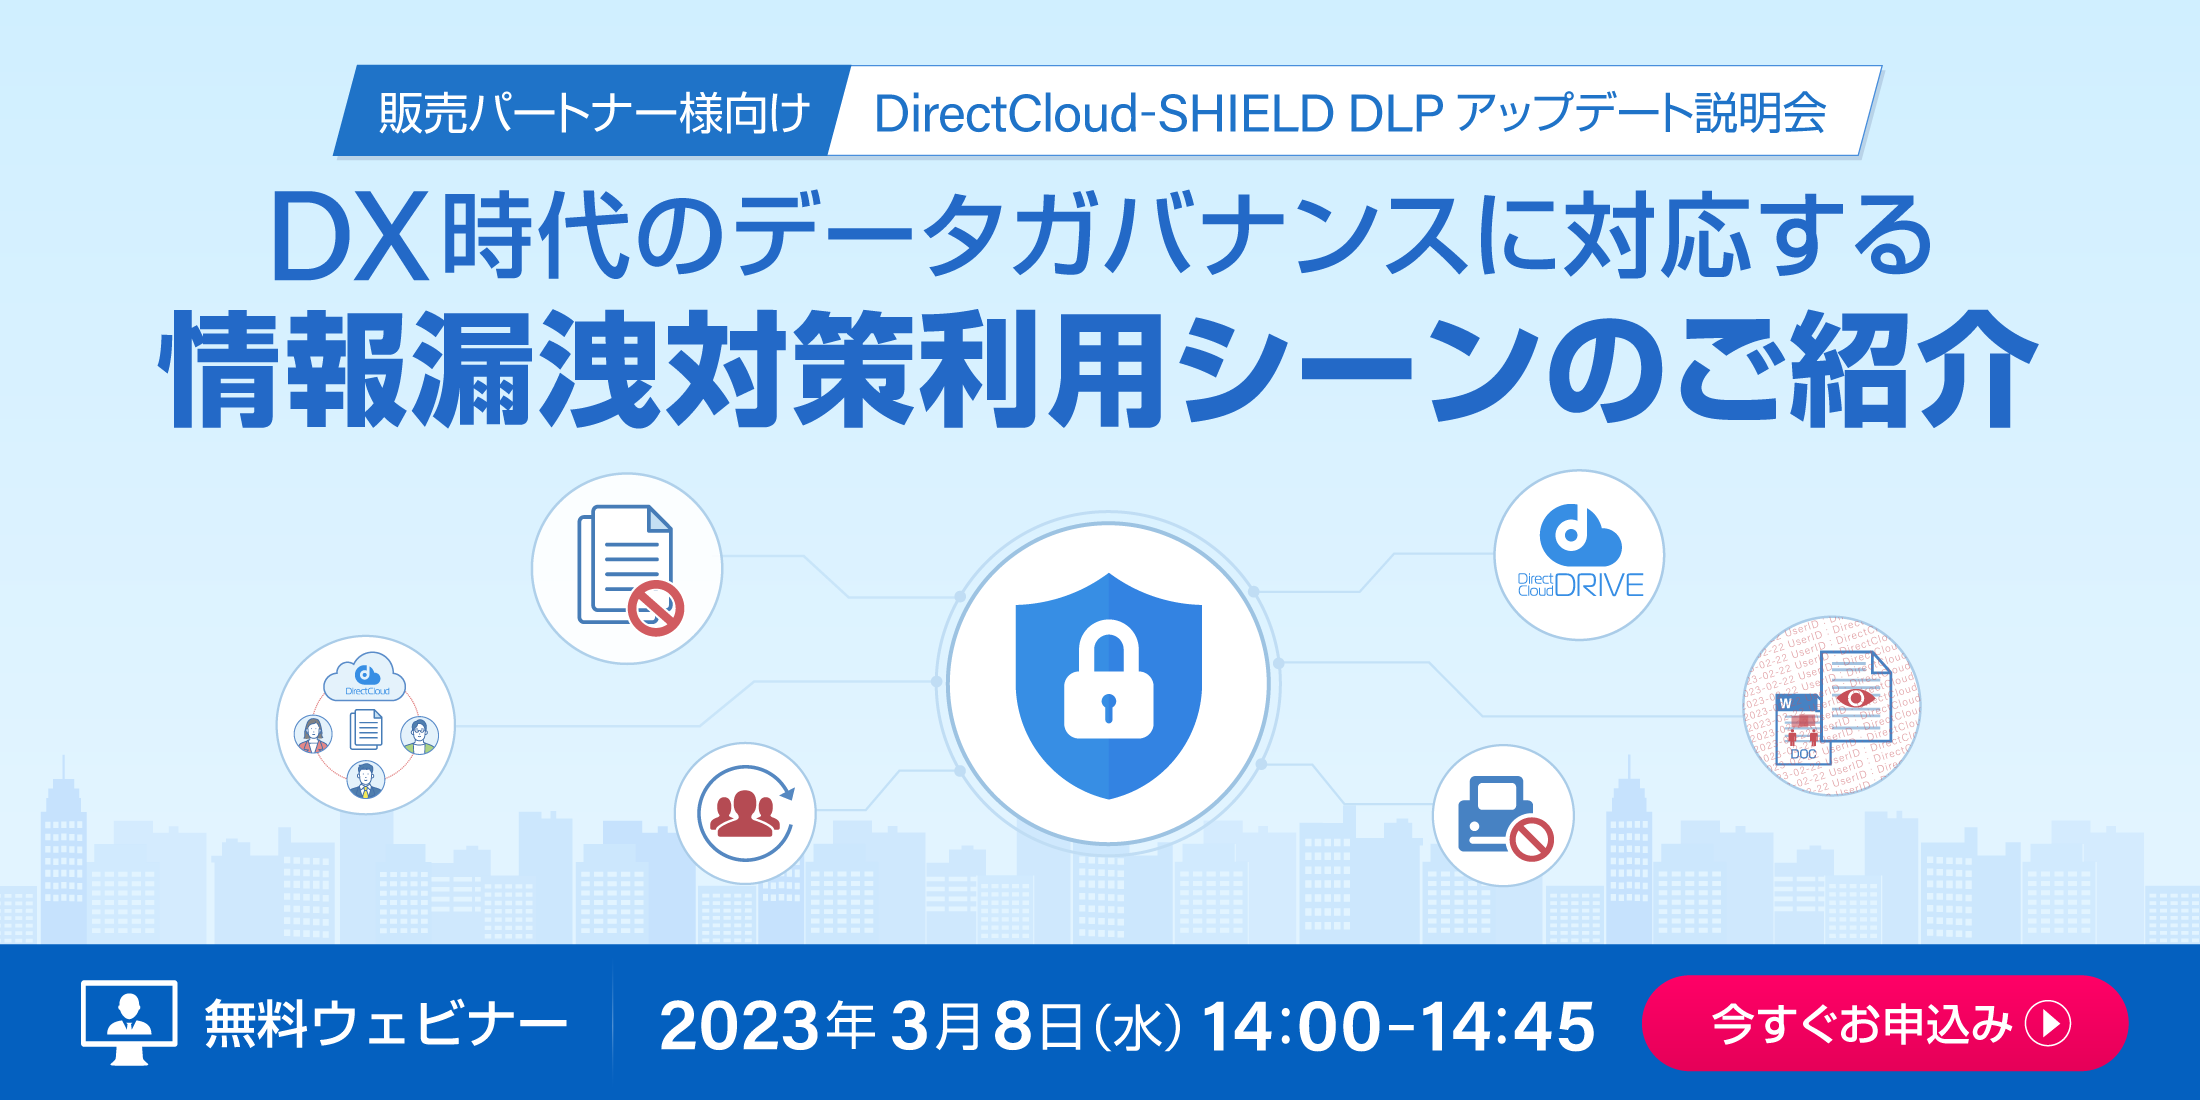 【販売パートナー様向け】DirectCloud-SHIELD DLPセミナー